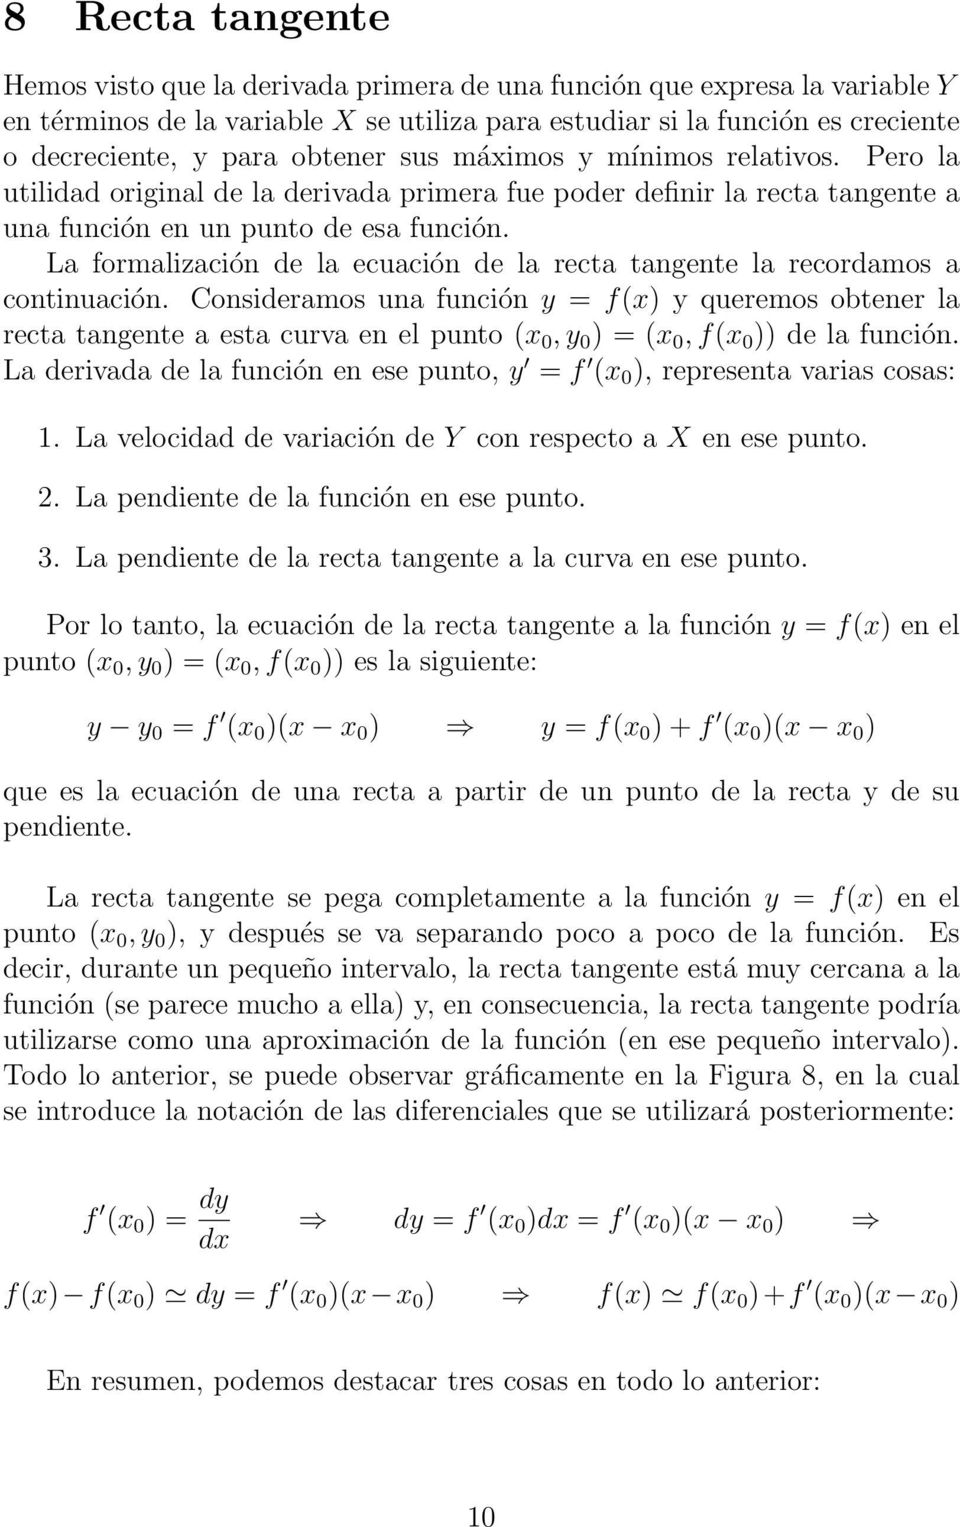 La formalización de la ecuación de la recta tangente la recordamos a continuación.